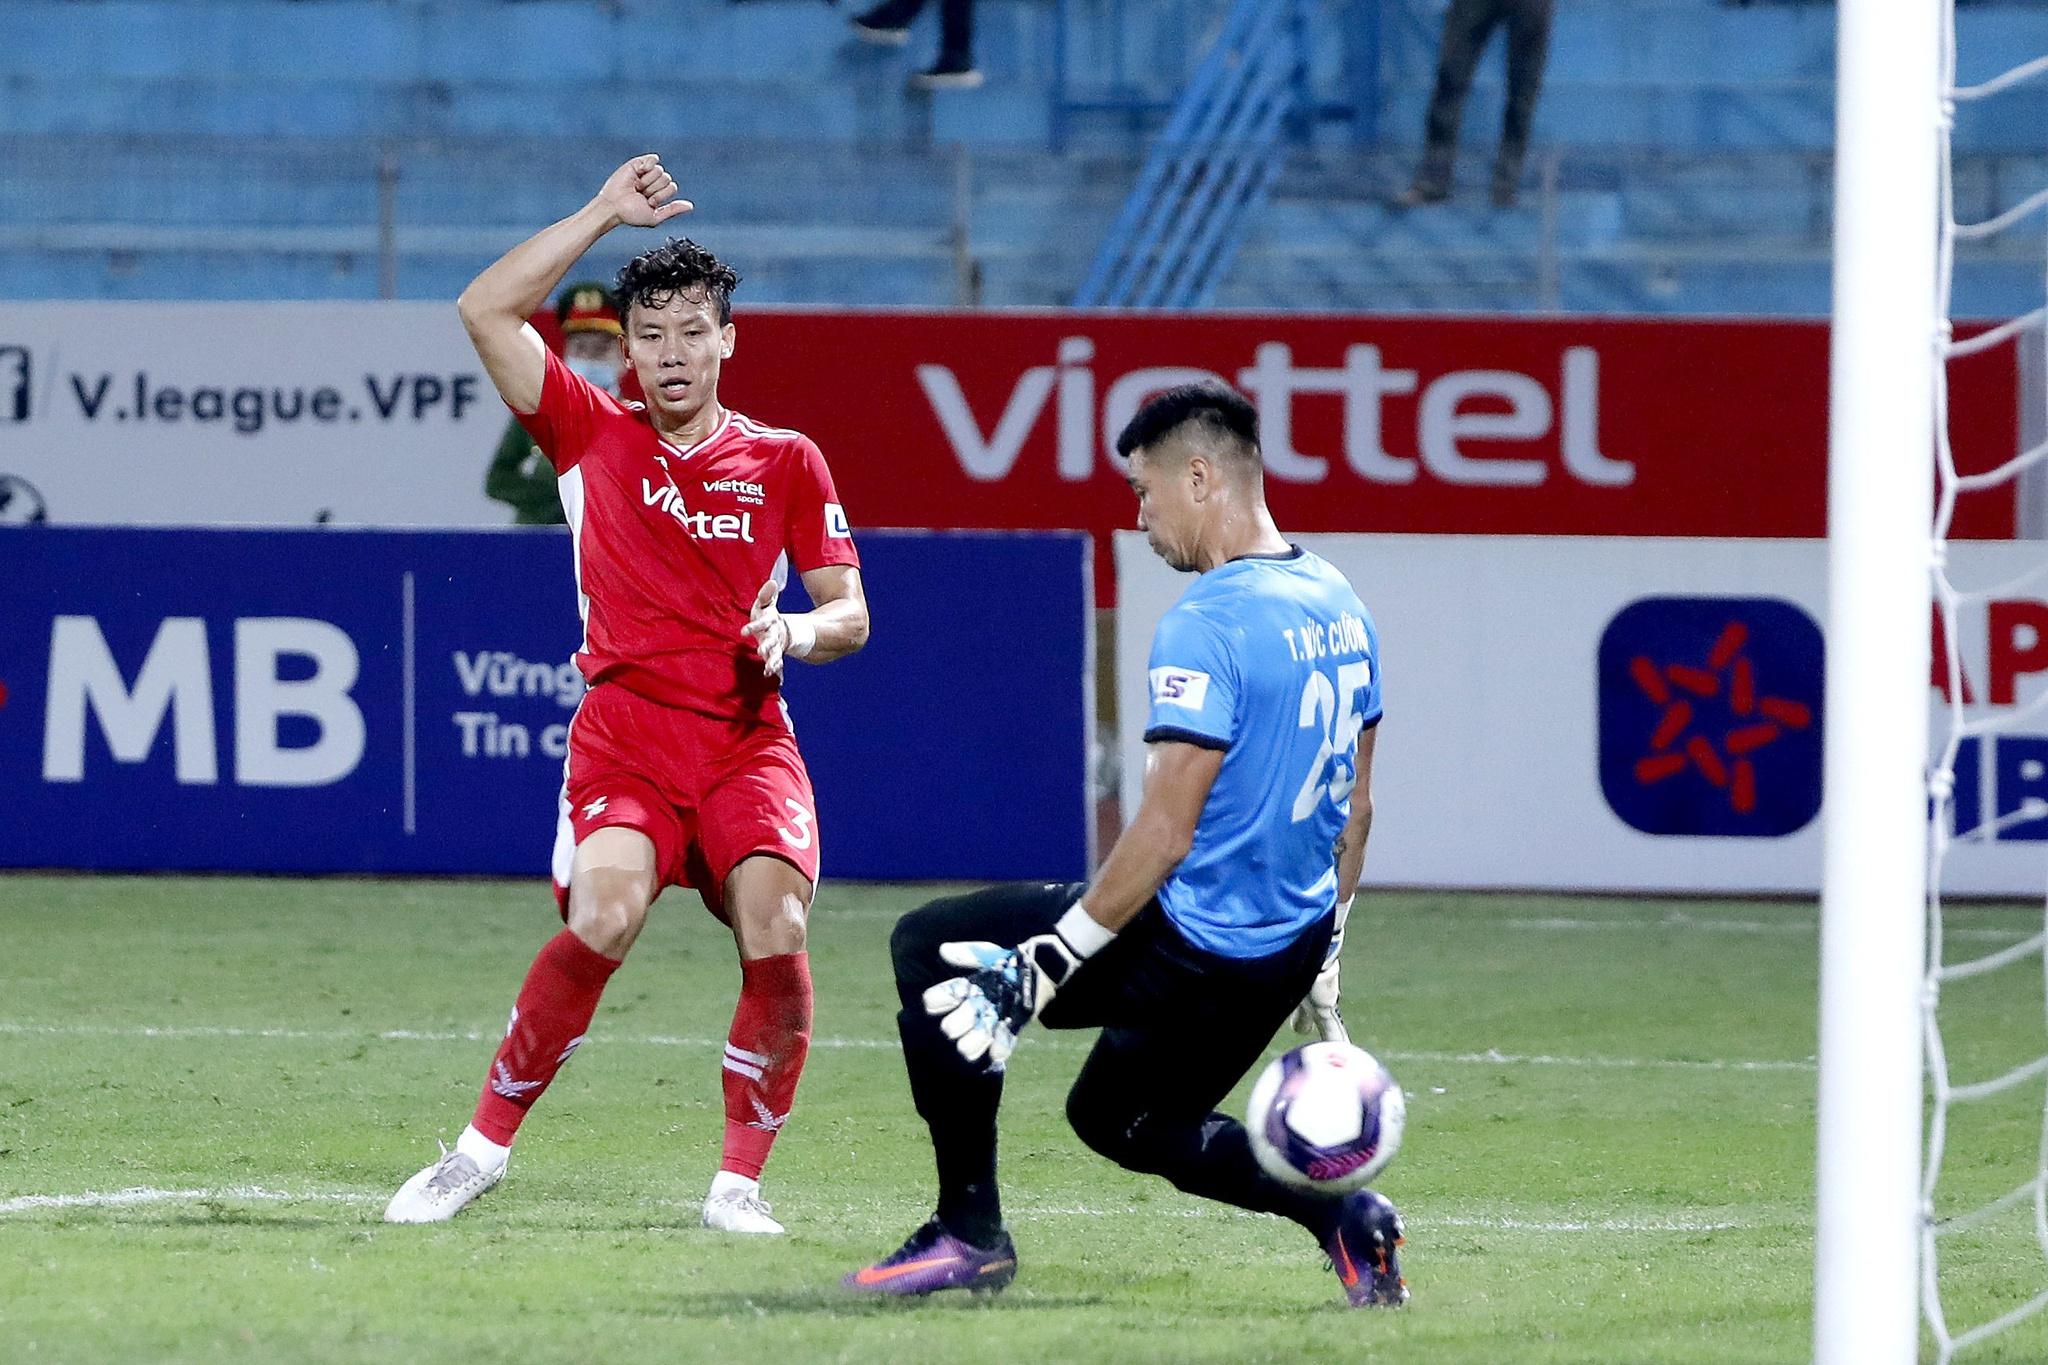 Kết quả bóng đá CLB Bình Định 0-1 Viettel: Hoàng Đức sút phạt thành 'siêu phẩm' - ảnh 3